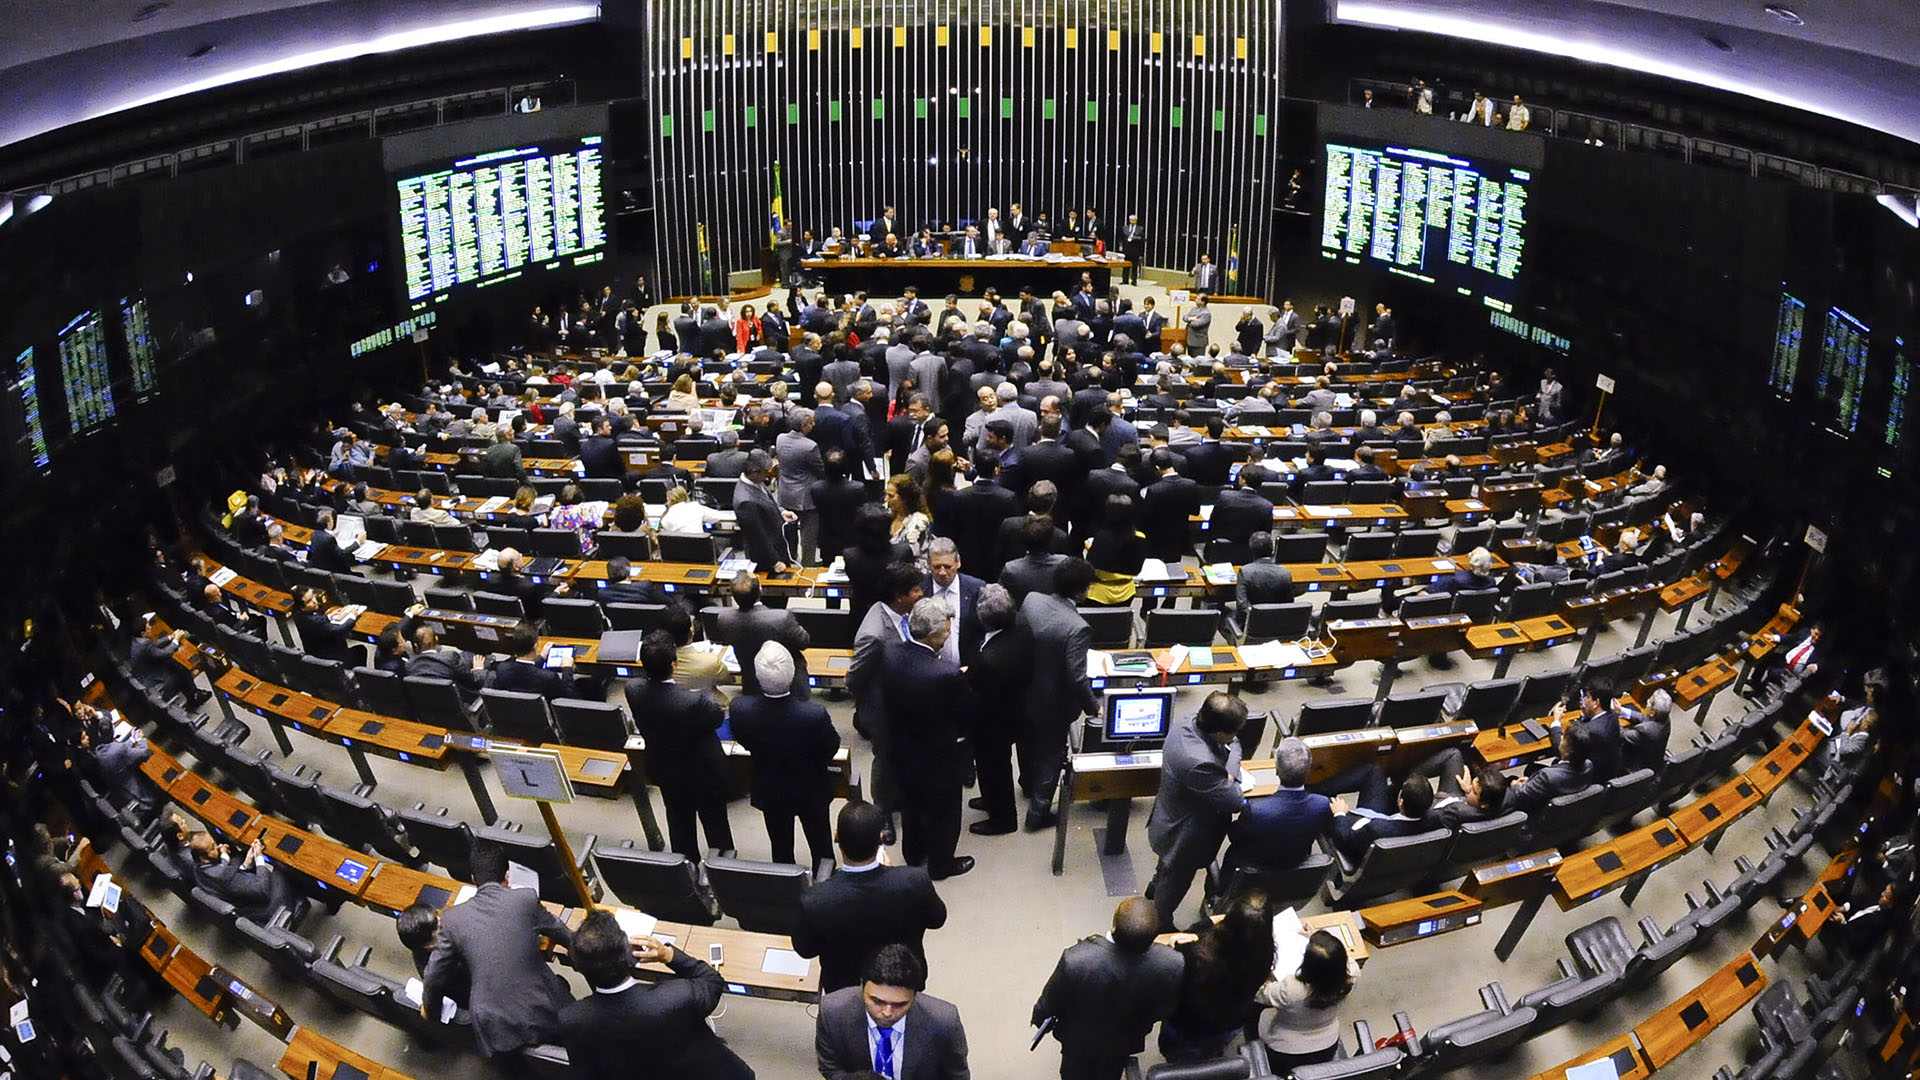 Brésil : Le « budget secret » des députés est inconstitutionnel